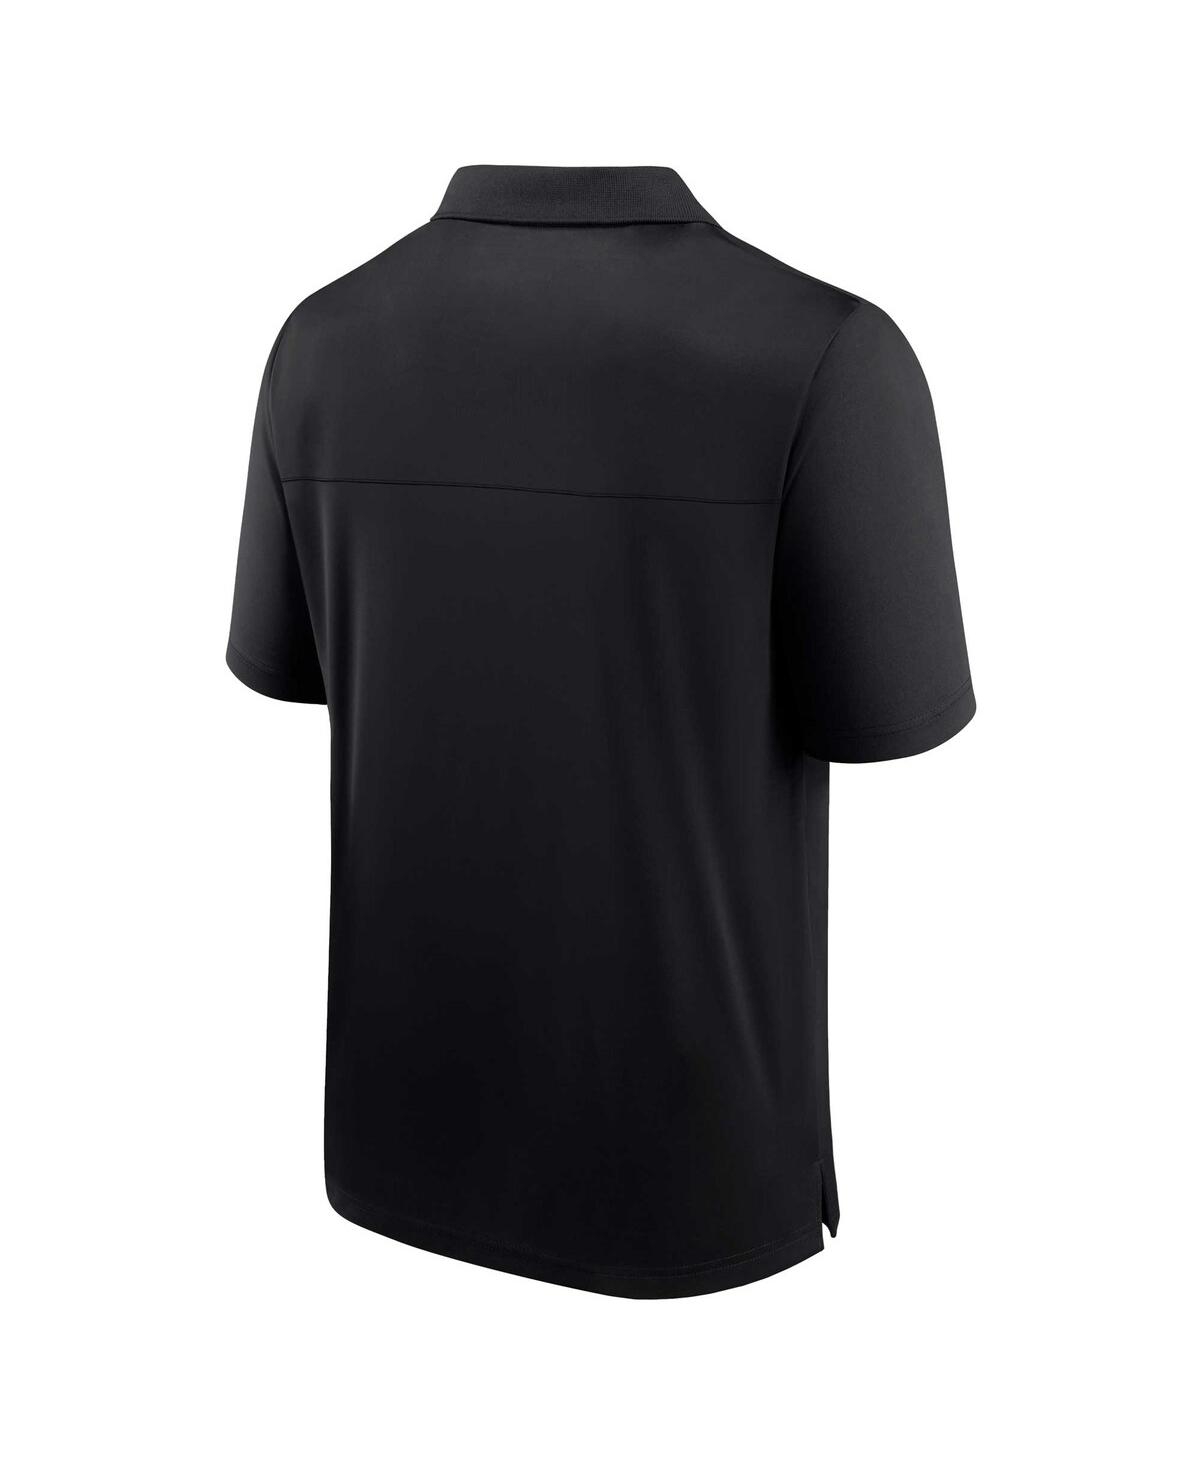 Shop Fanatics Men's  Black Baltimore Orioles Logo Polo Shirt